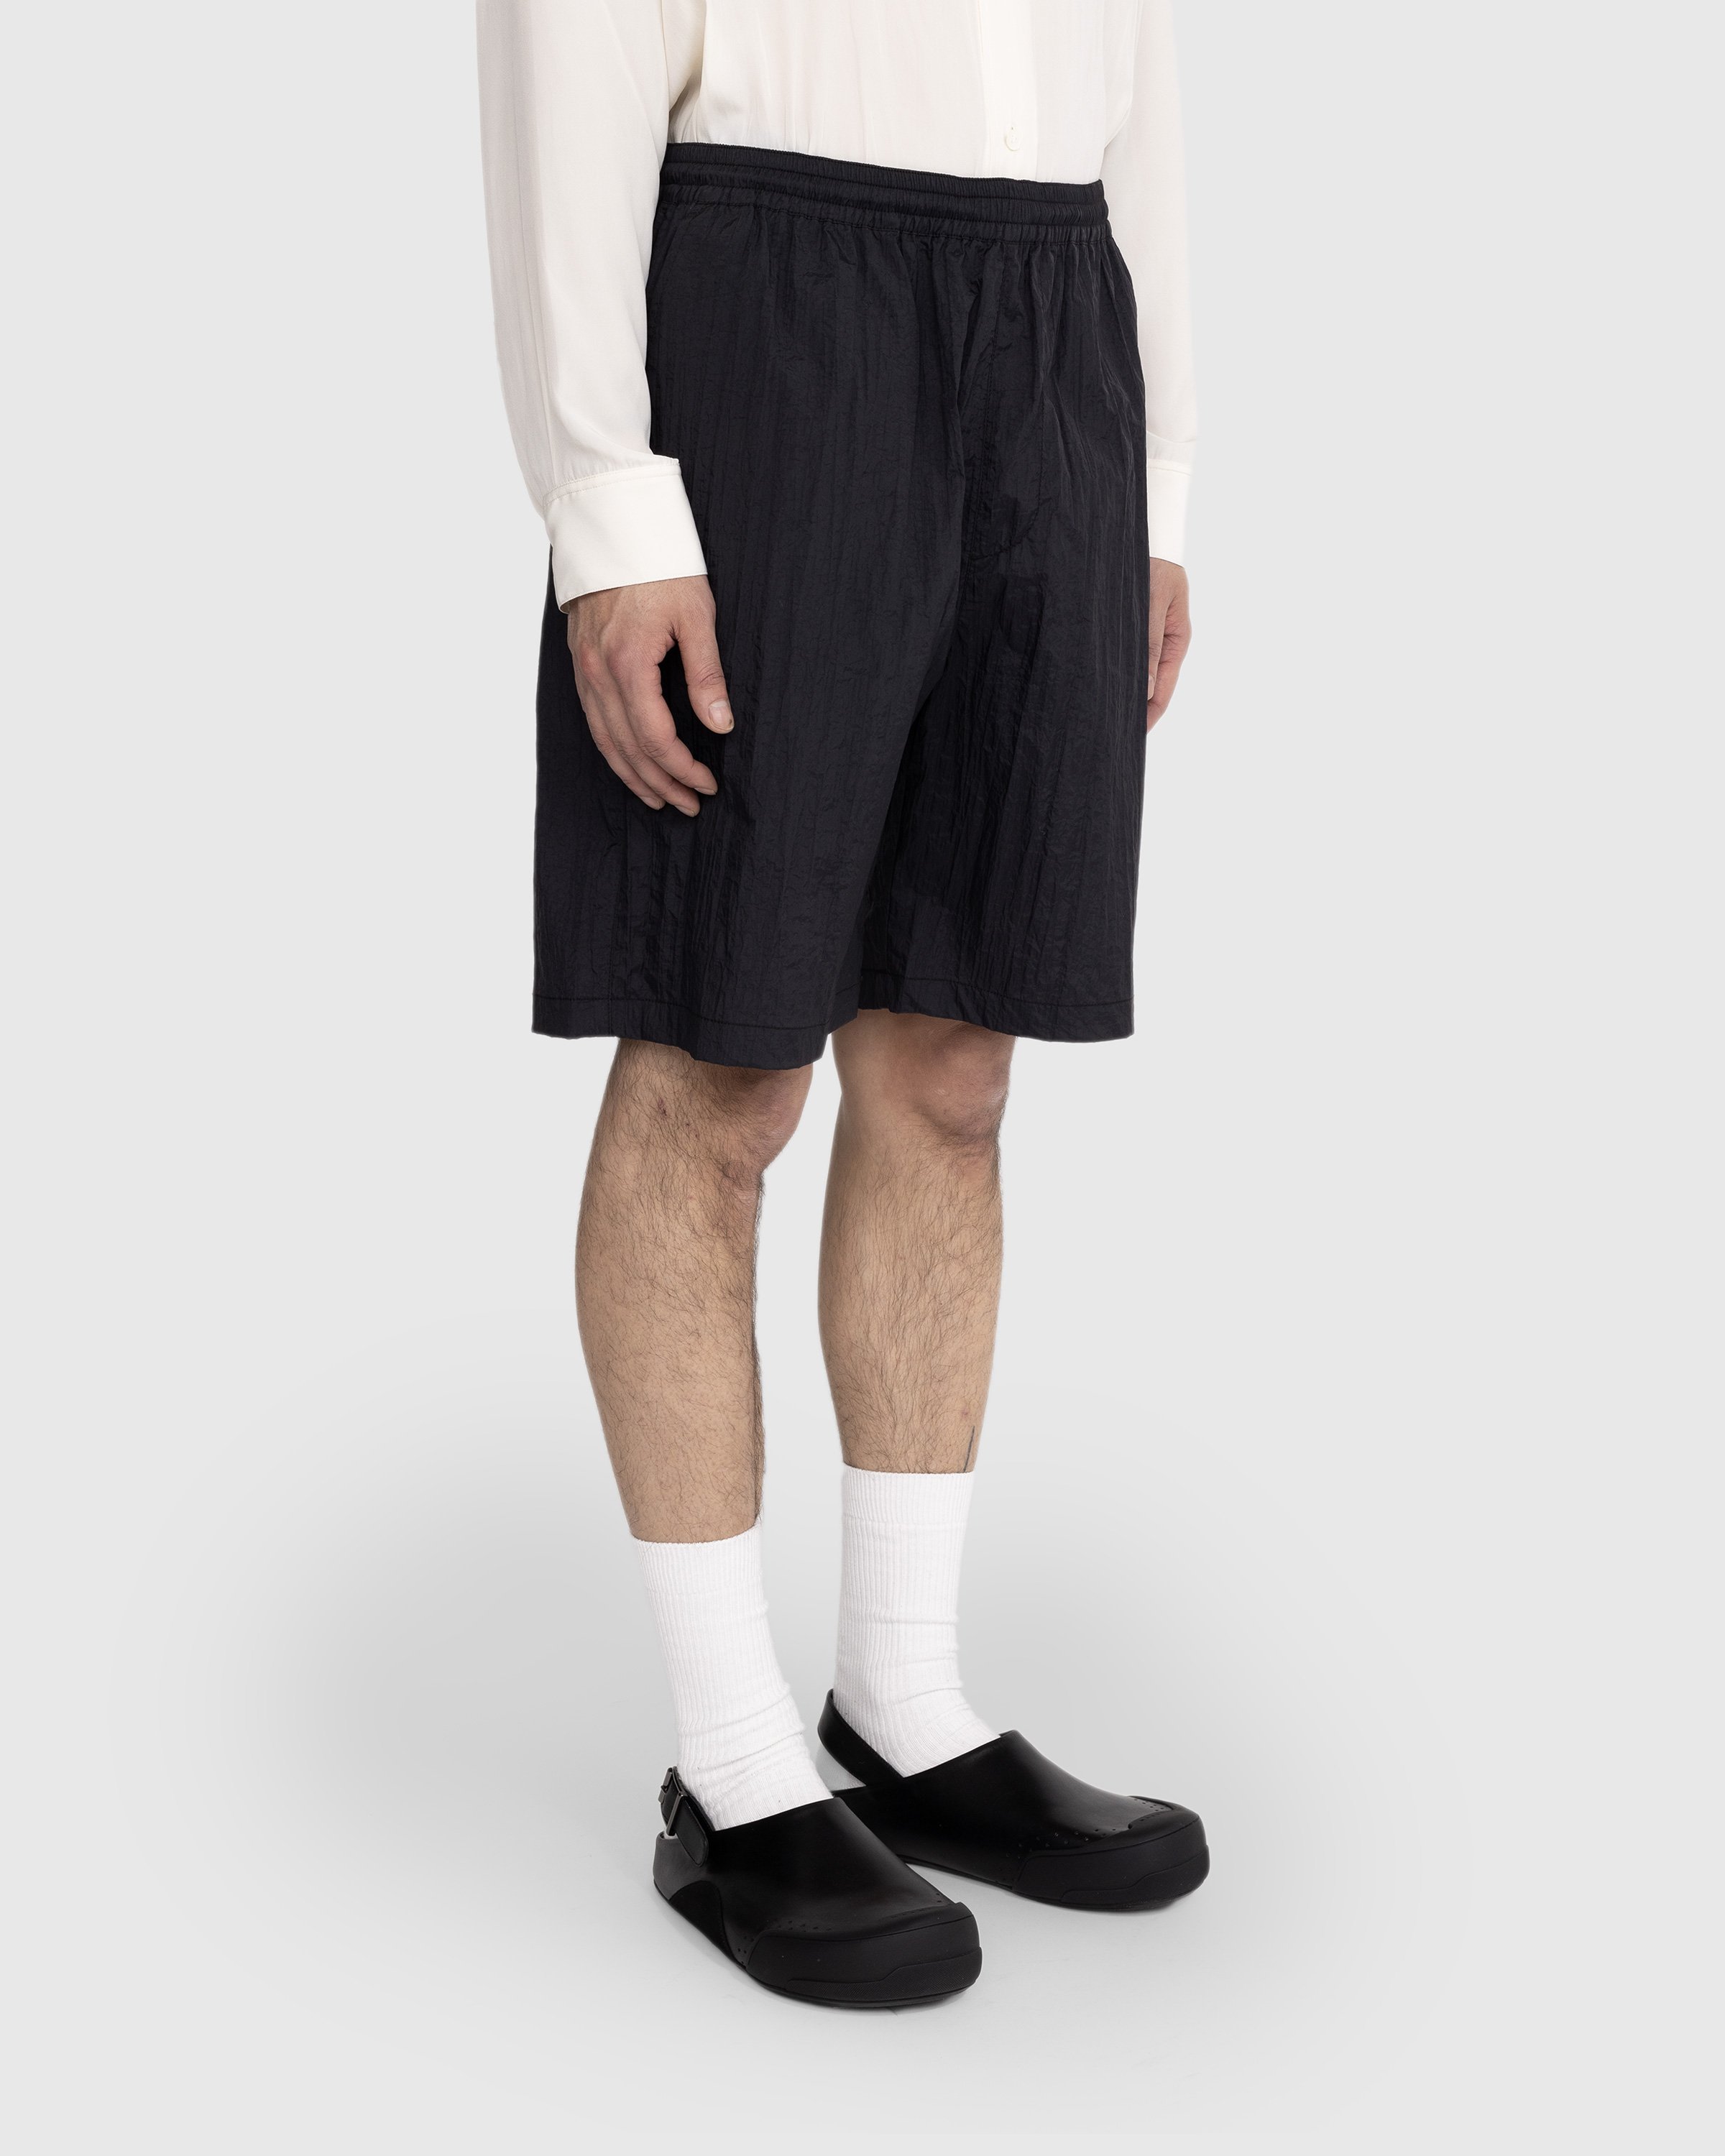 Highsnobiety - Texture Nylon Mid Length Elastic Shorts Black - Clothing - Black - Image 4